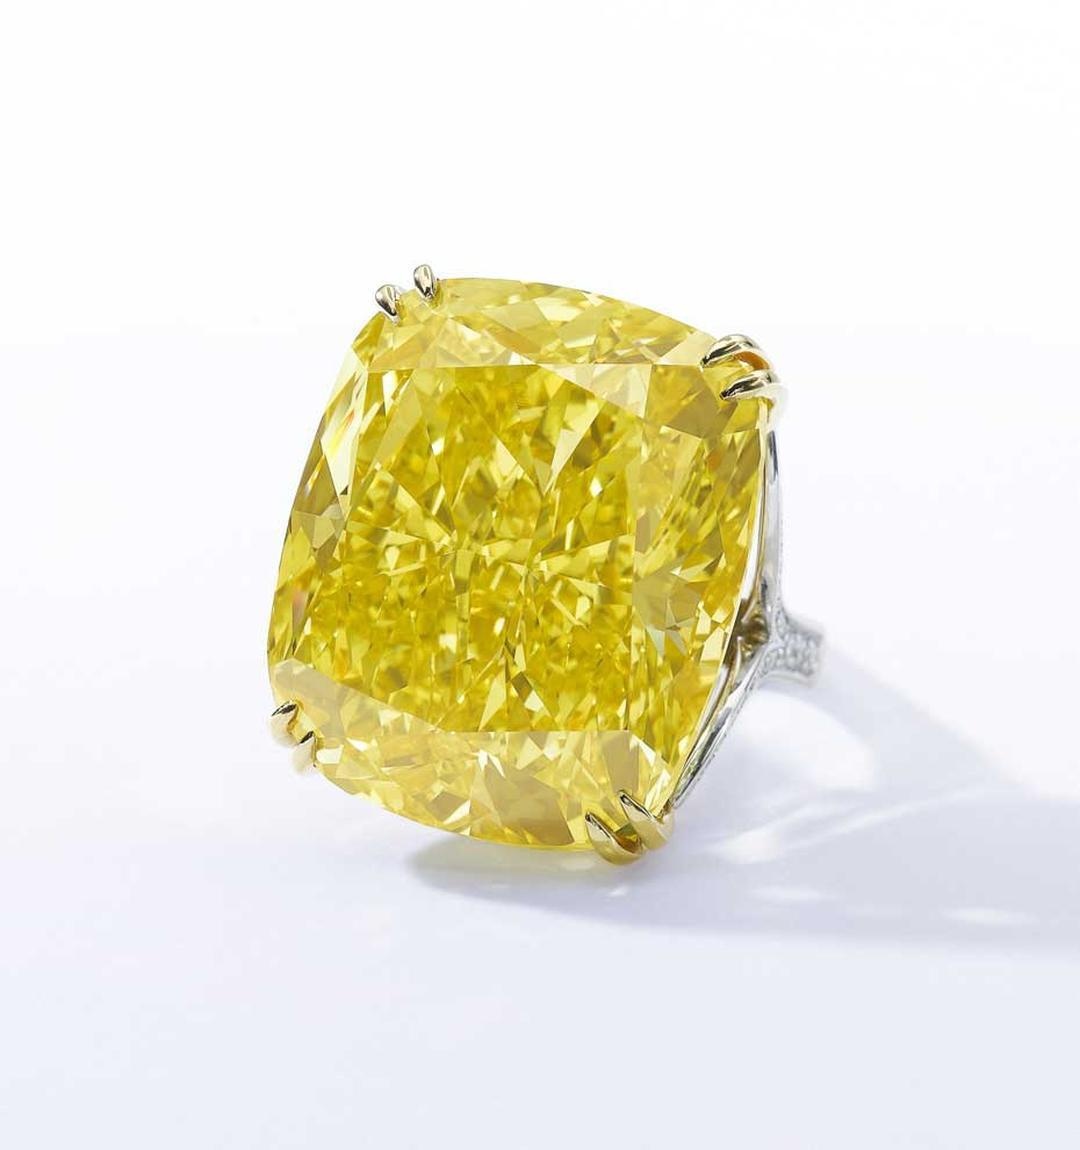 蘇富比曾售出史上最珍貴的黃鑽，包括2014年在日內瓦拍賣的100.09克拉古墊形艶彩黃鑽「格拉夫艶黃」（Graff Vivid Yellow），以1,630萬美元成交，刷新了當時黃鑽的世界拍賣紀錄。